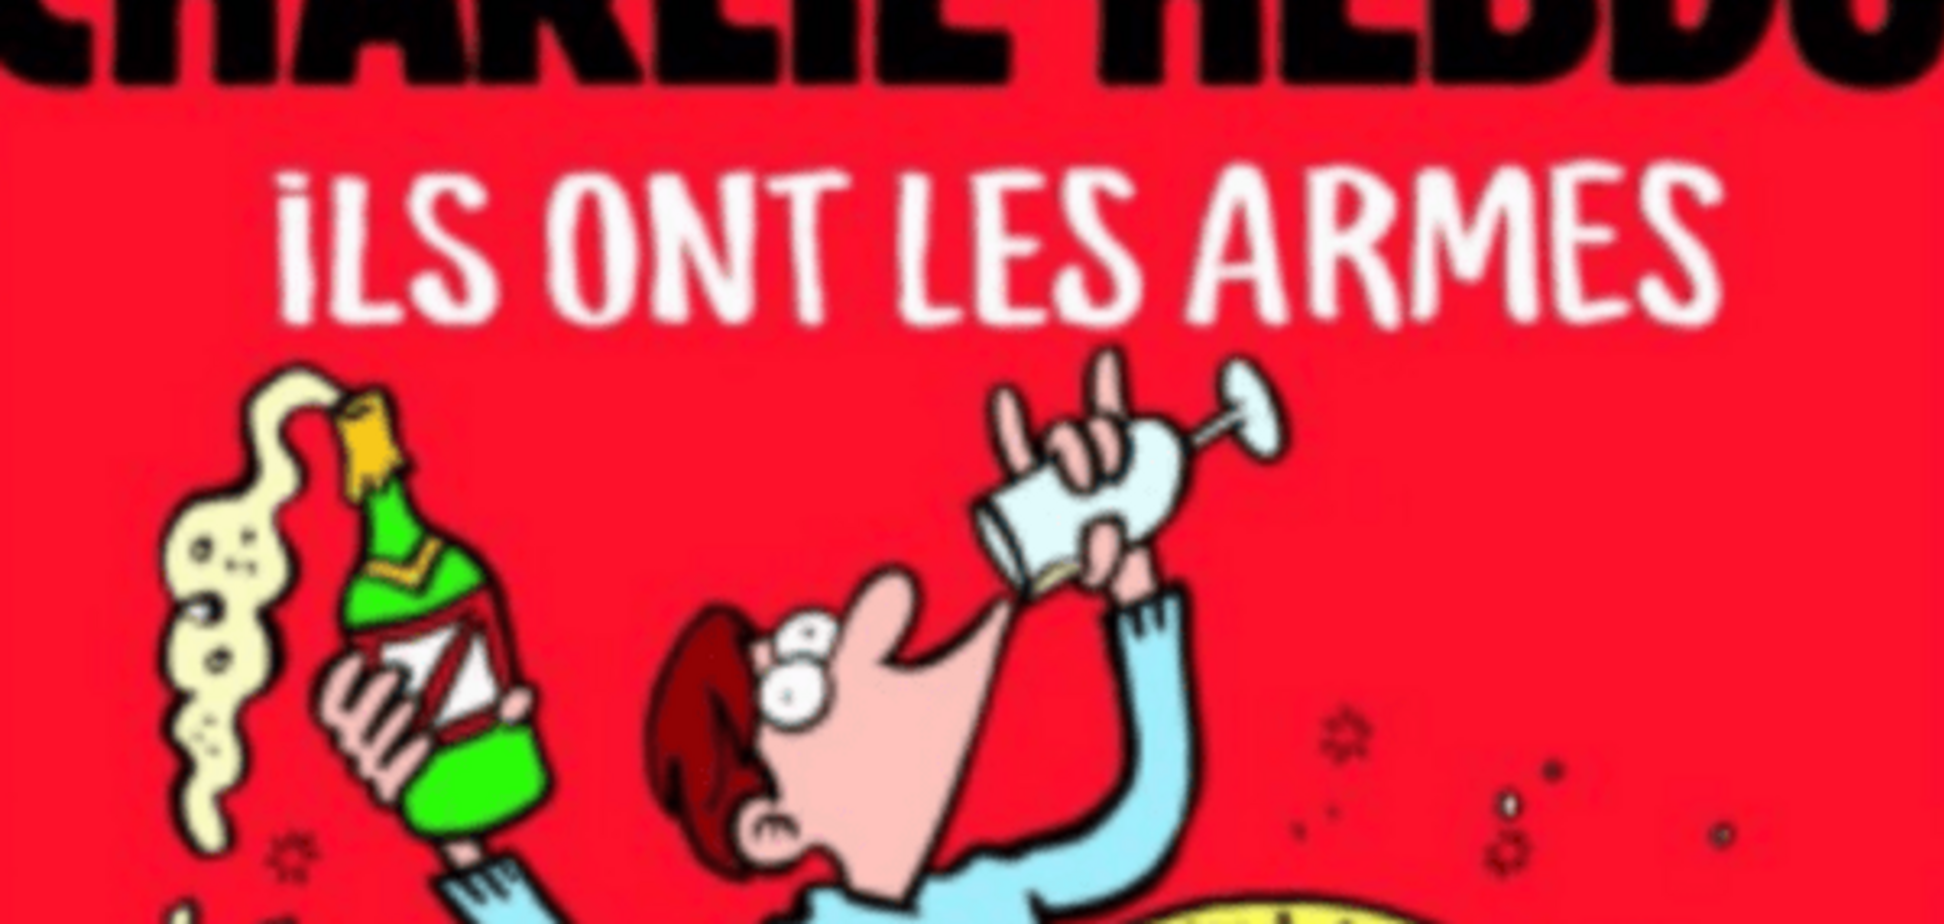 Та пішли вони, у нас є шампанське: Charlie Hebdo опублікував обкладинку про теракти в Парижі